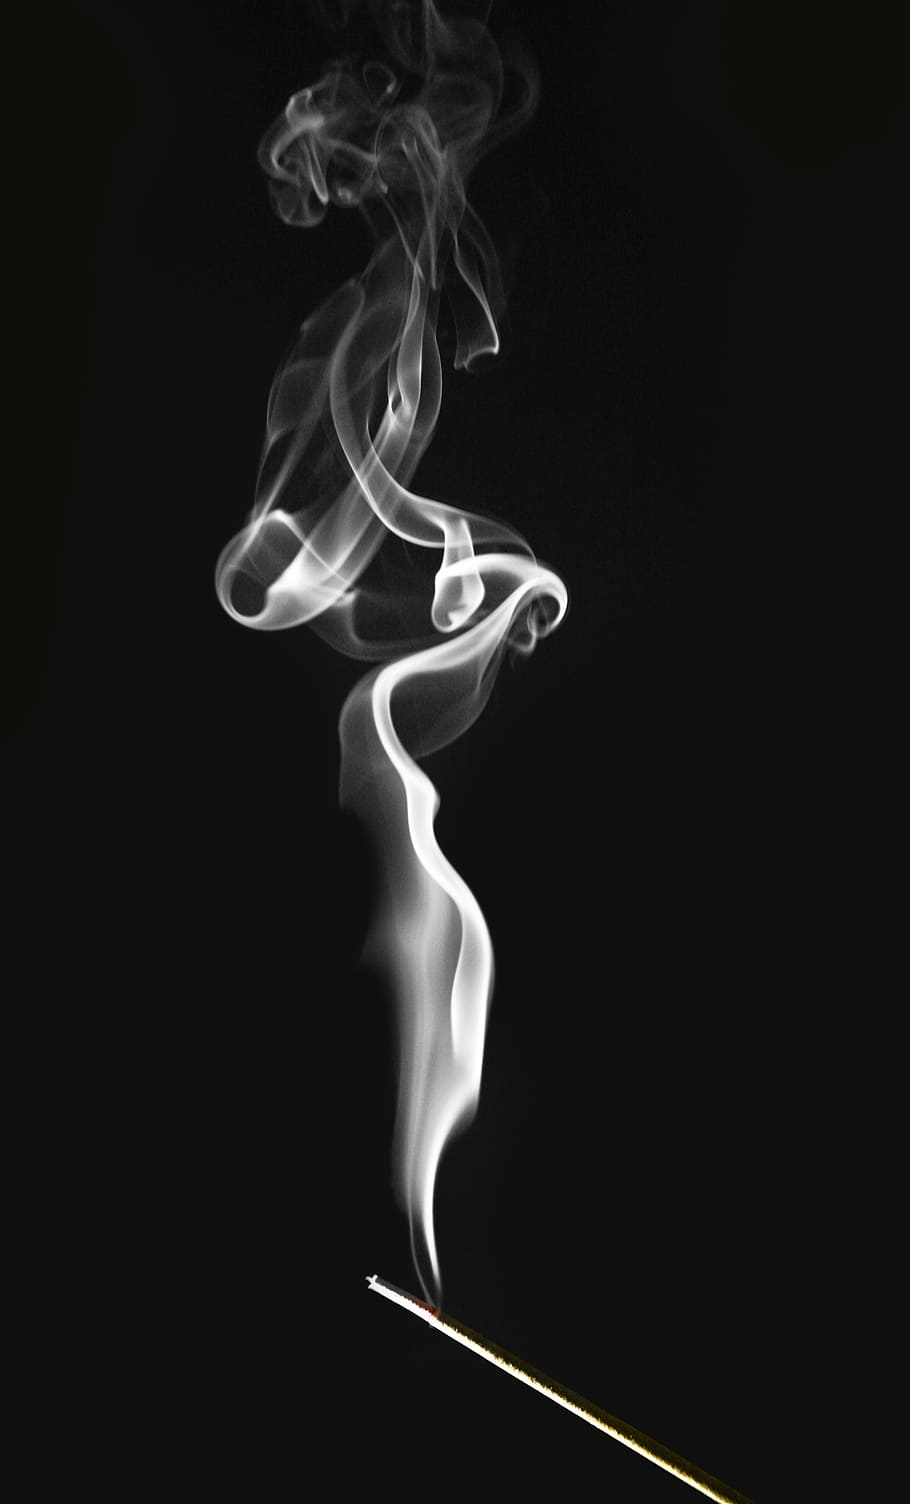 foto, humo, negro, fondo, incienso, espirales, remolinos, contraste, quemar, oler